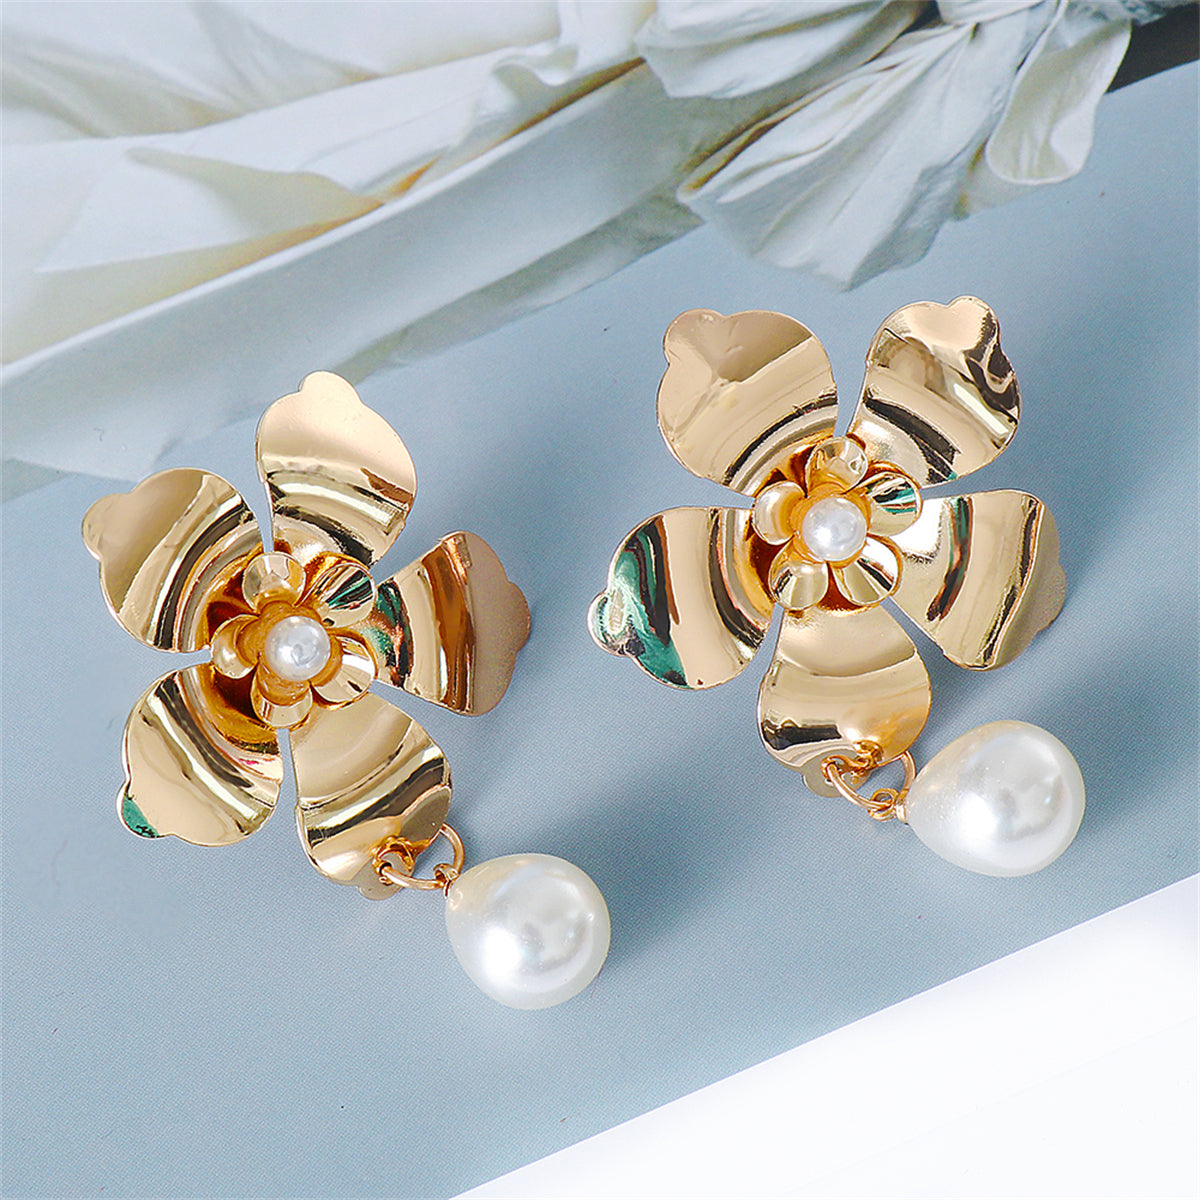 Pearl & 18K Gold-Plated Flower Drop Earrings